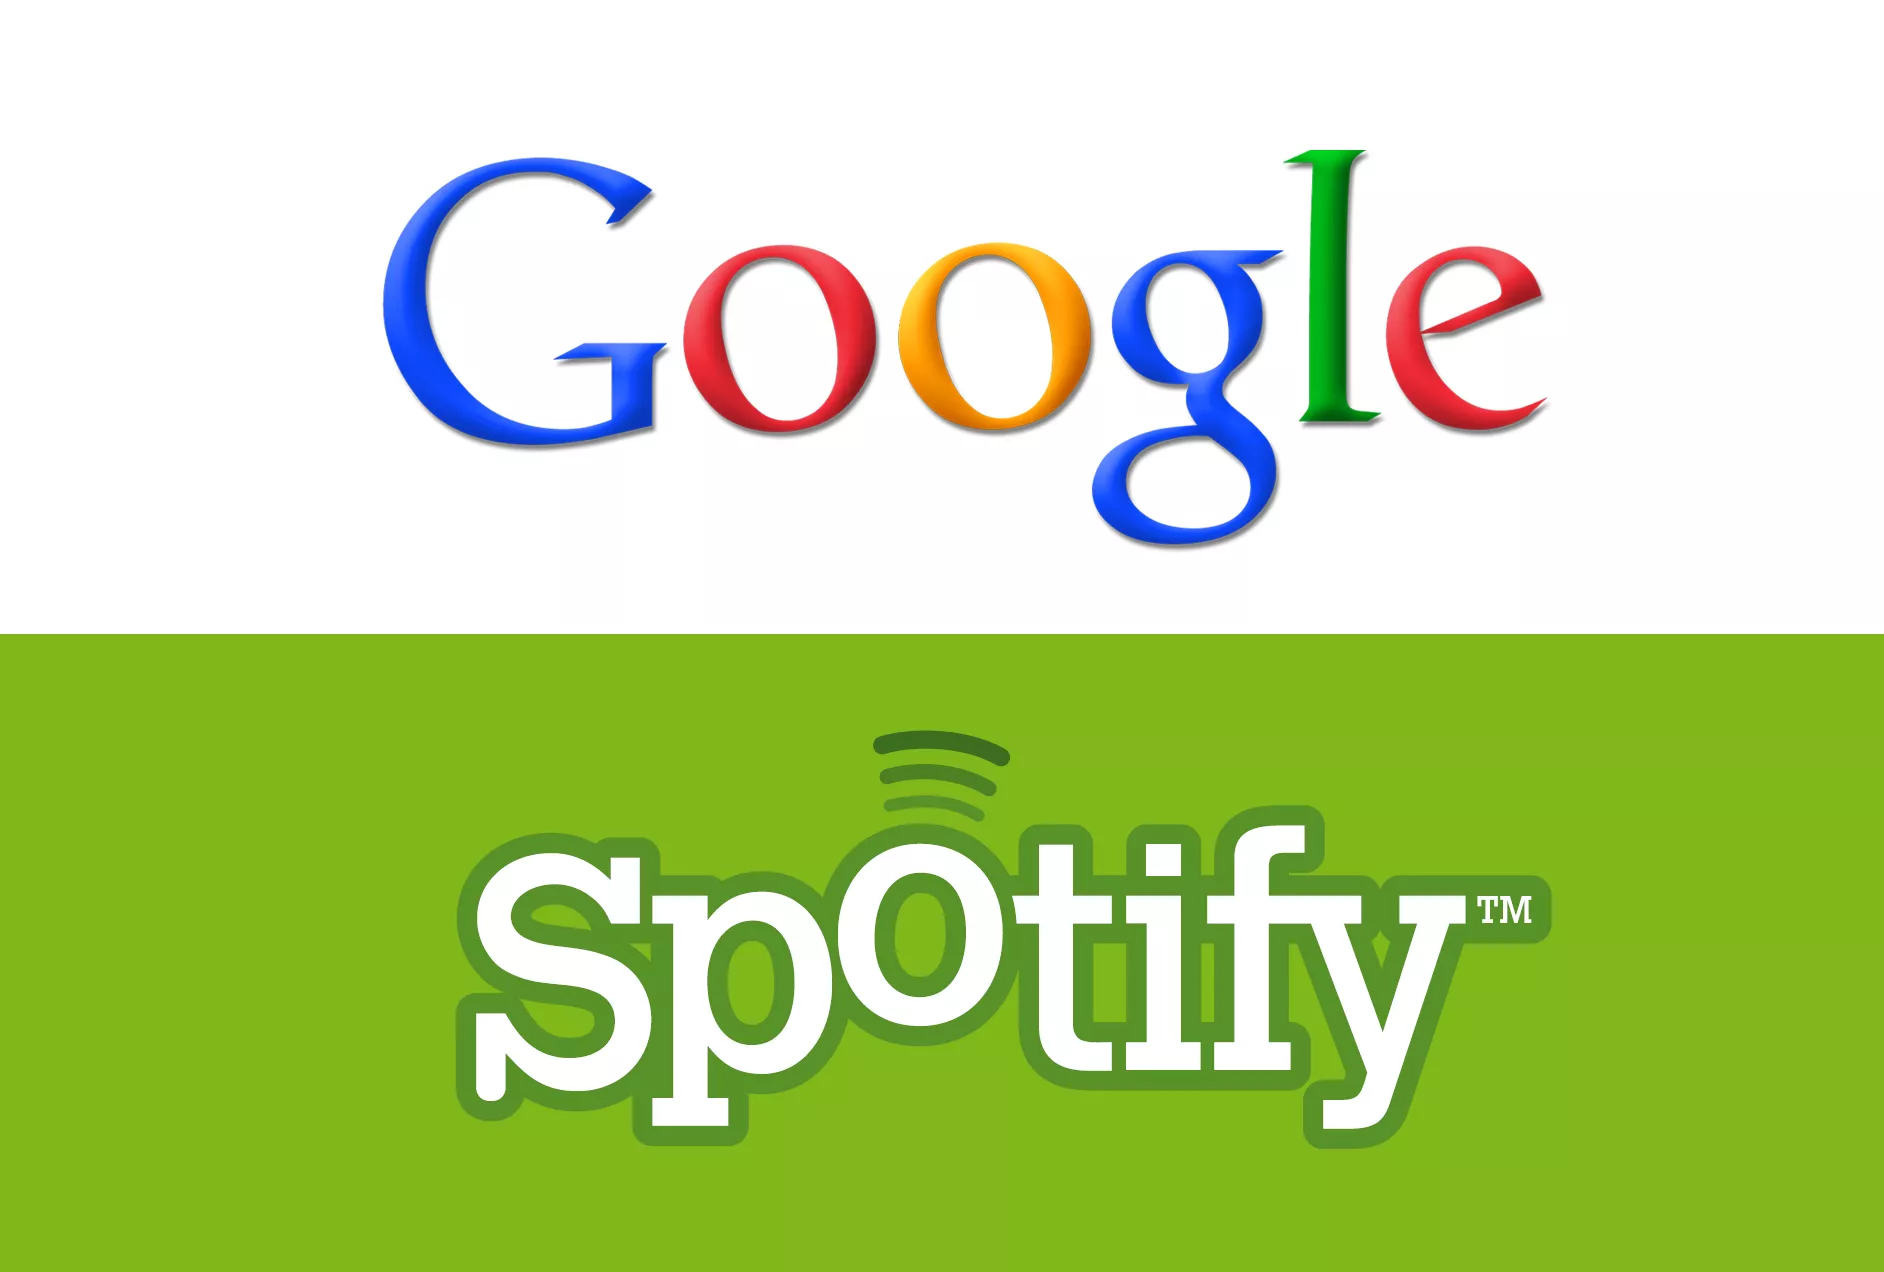 Spotify går til "the dark side" - Google kjemper imot